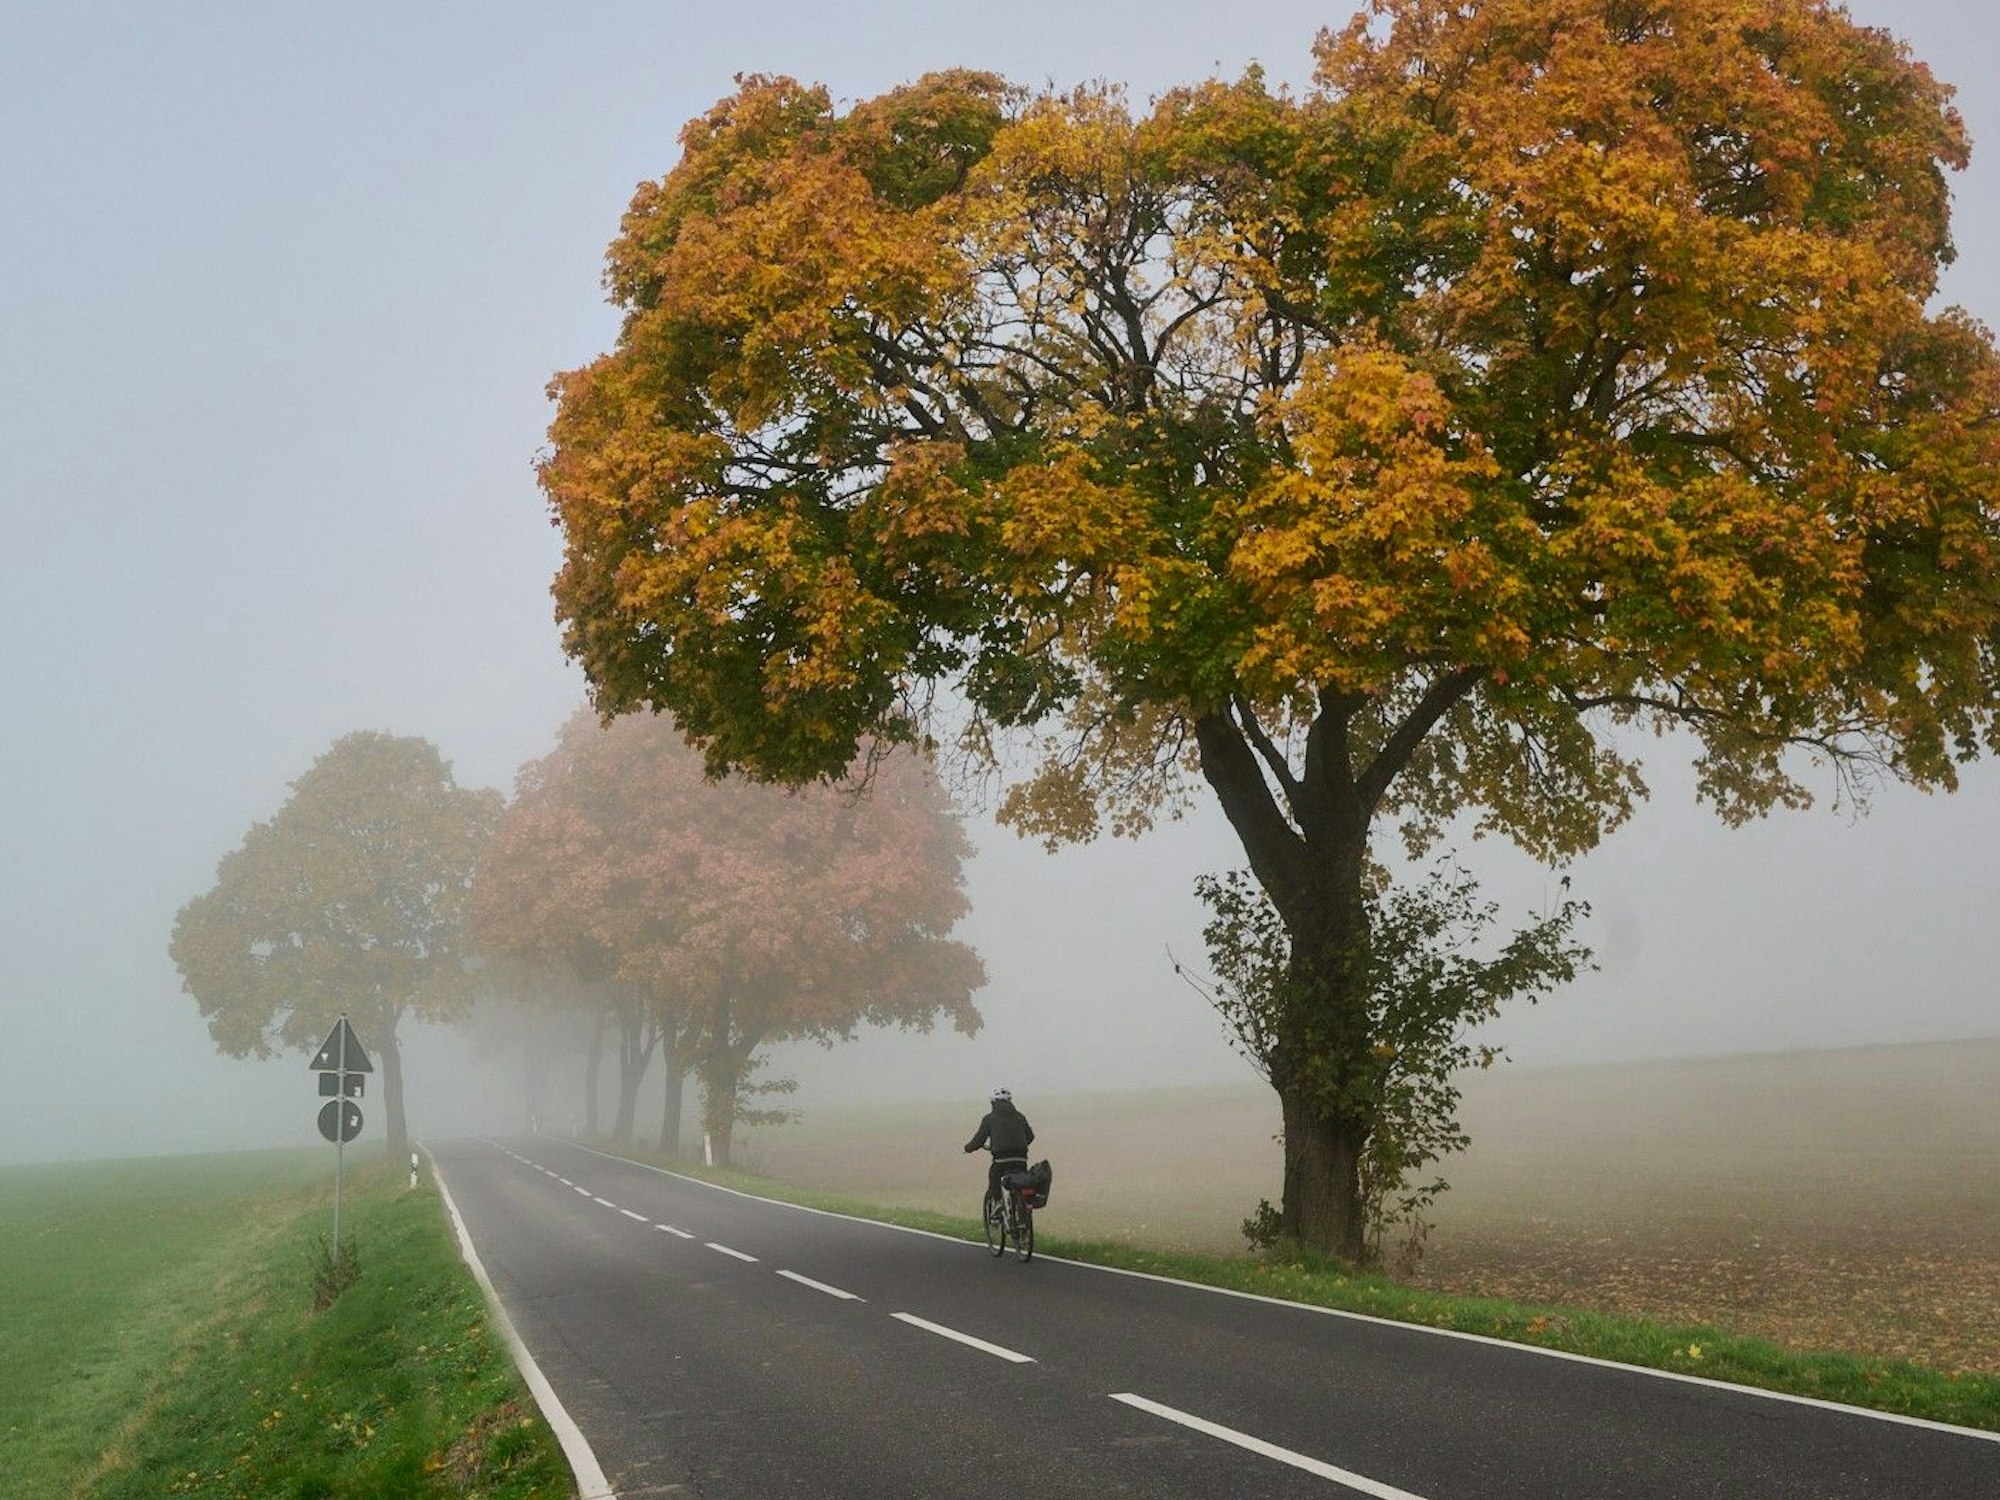 Ein Fahrradfahrer befährt eine Landstraße. Links ist eine Wiese zu sehen, rechts Bäume mit rot-braunen Blättern, die nach hinten im Nebel verschwinden.